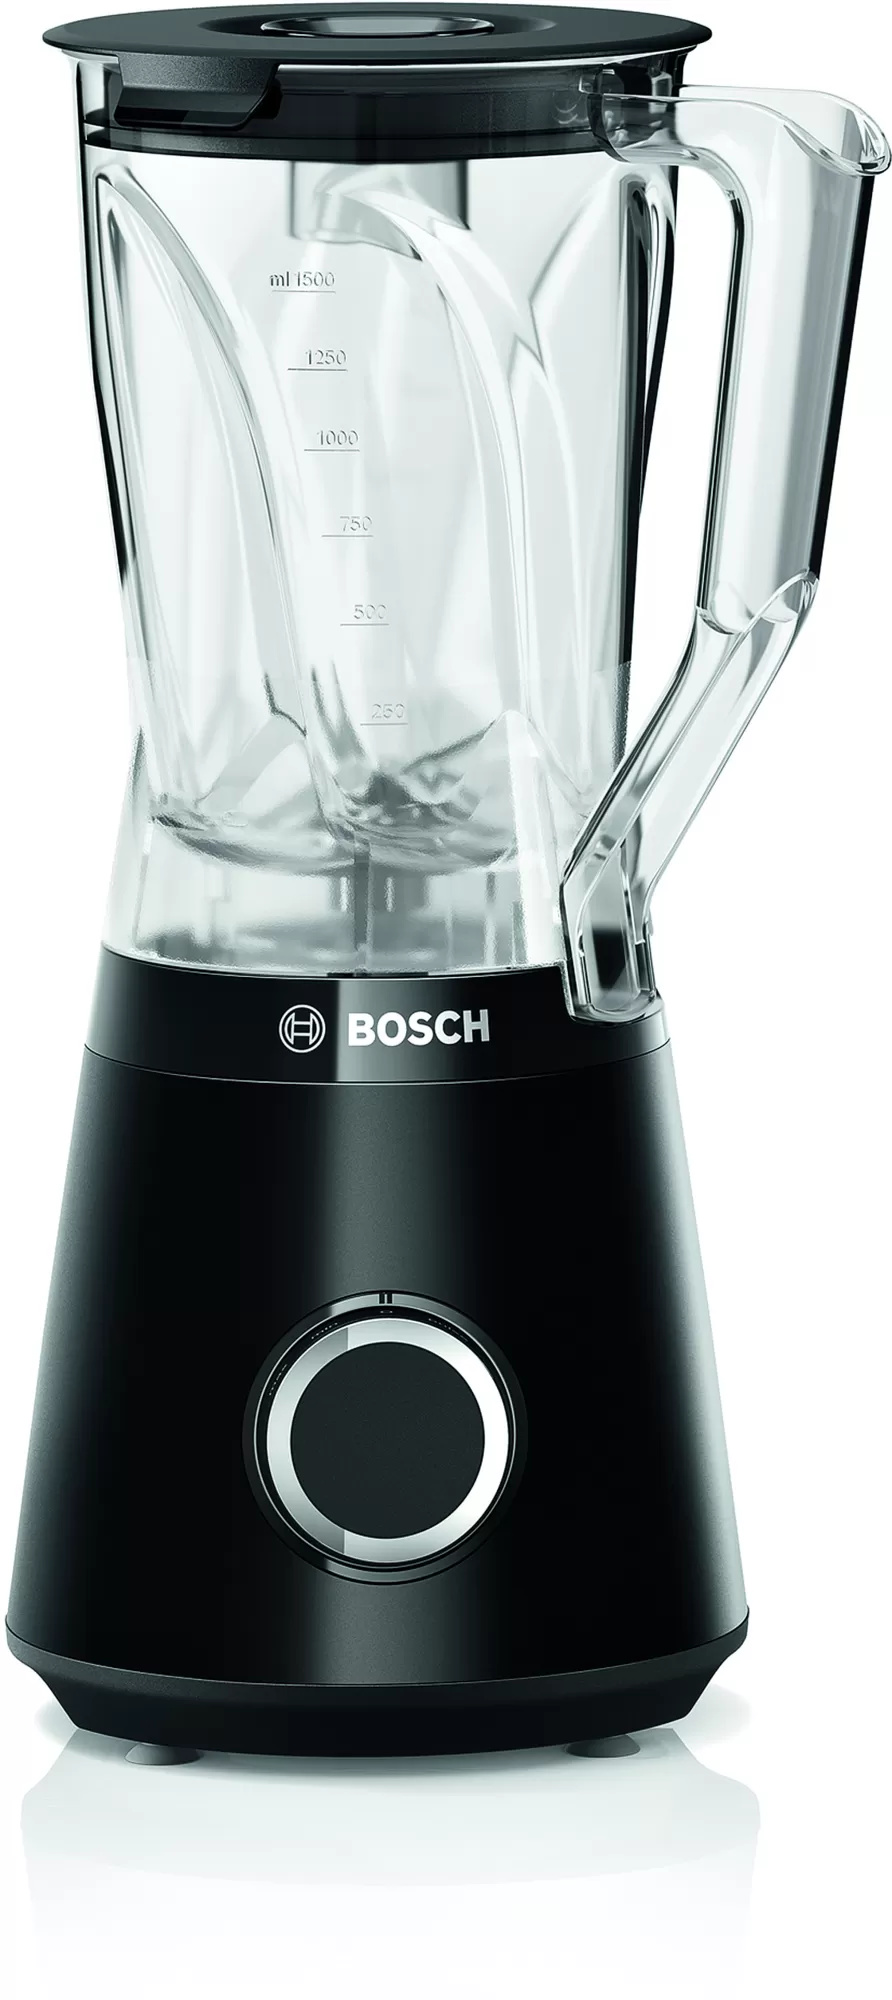 Blender de masa Bosch VitaPower MMB6141B Serie 4 1200W negru Bosch imagine 2022 1-1.ro